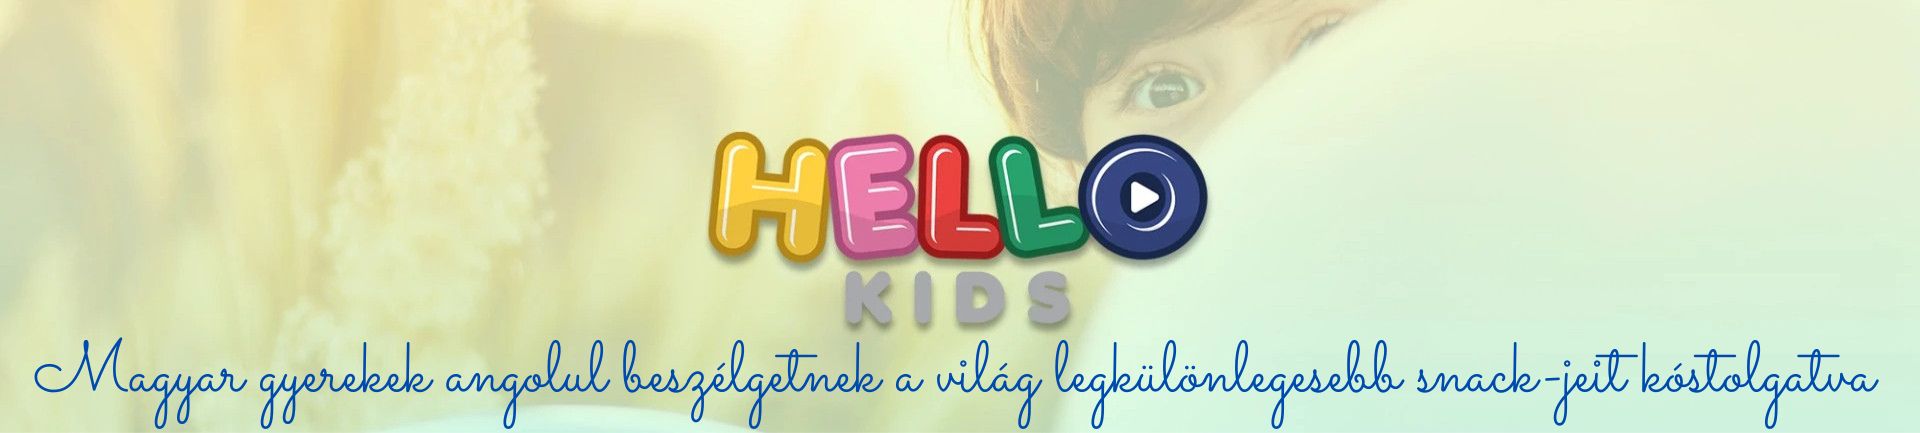 magyar gyerekek angolul beszélgetnek a világ legkülönlegesebb snack jeit kóstolgatva